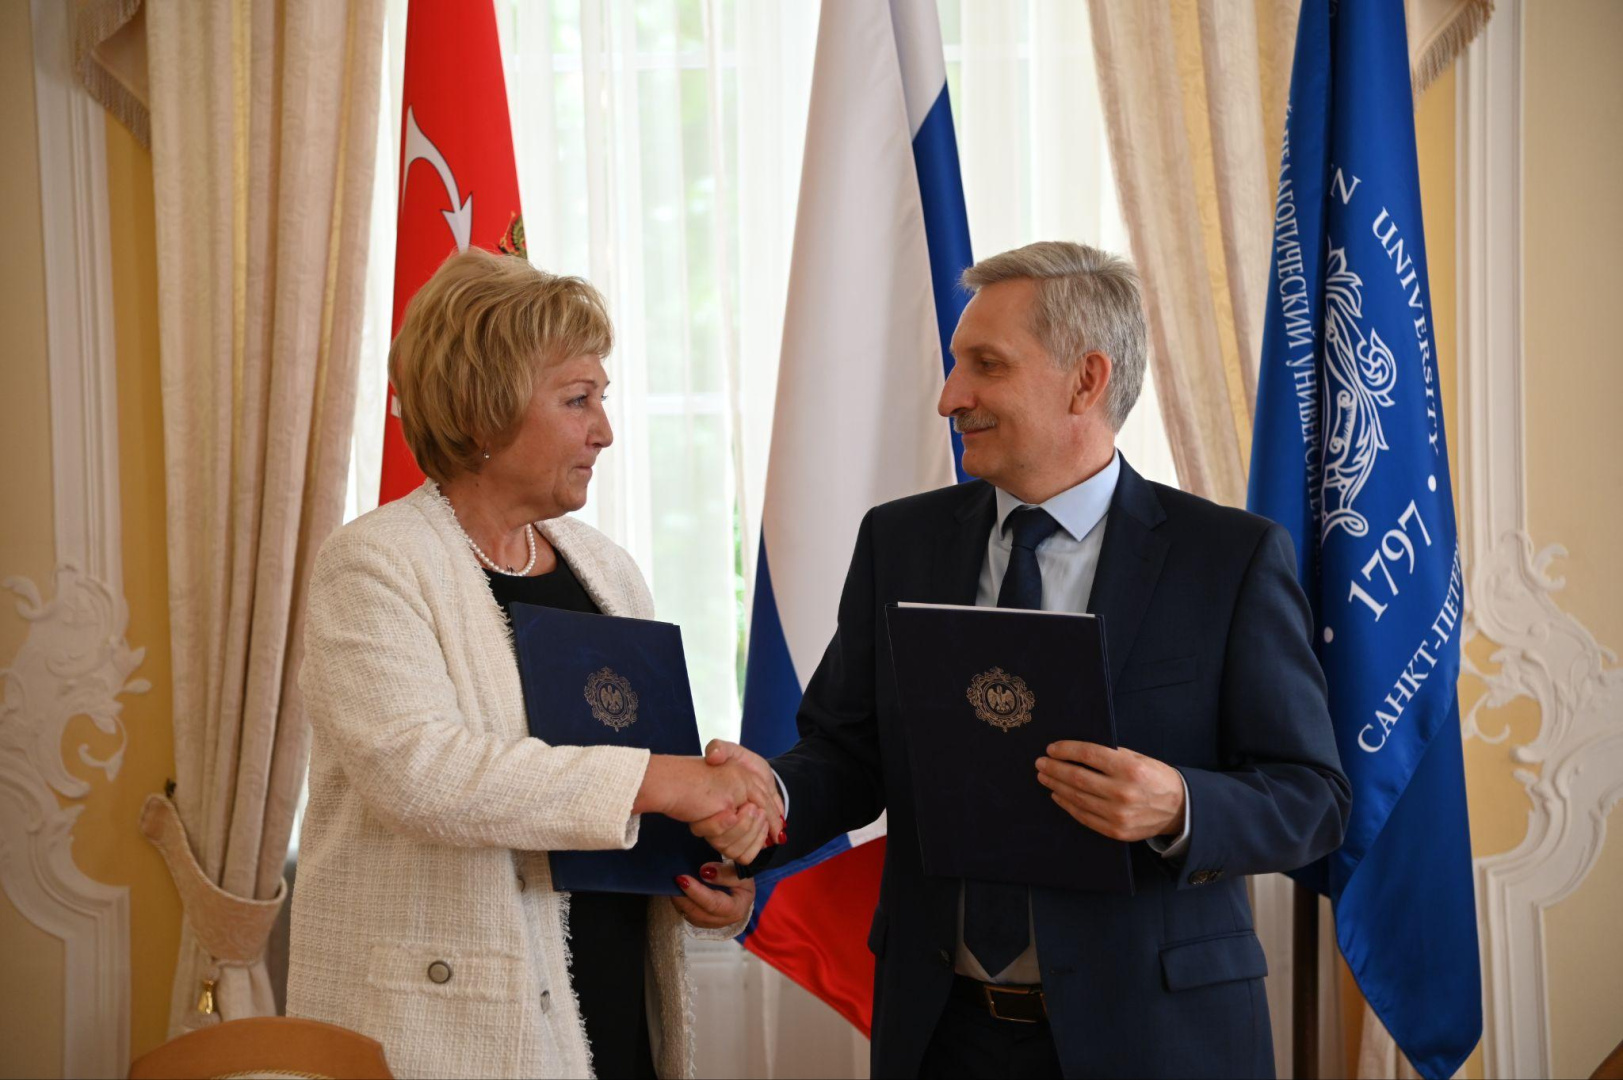 Герценовский университет заключил соглашение о сотрудничестве с Уполномоченным по правам ребёнка в Ленинградской области